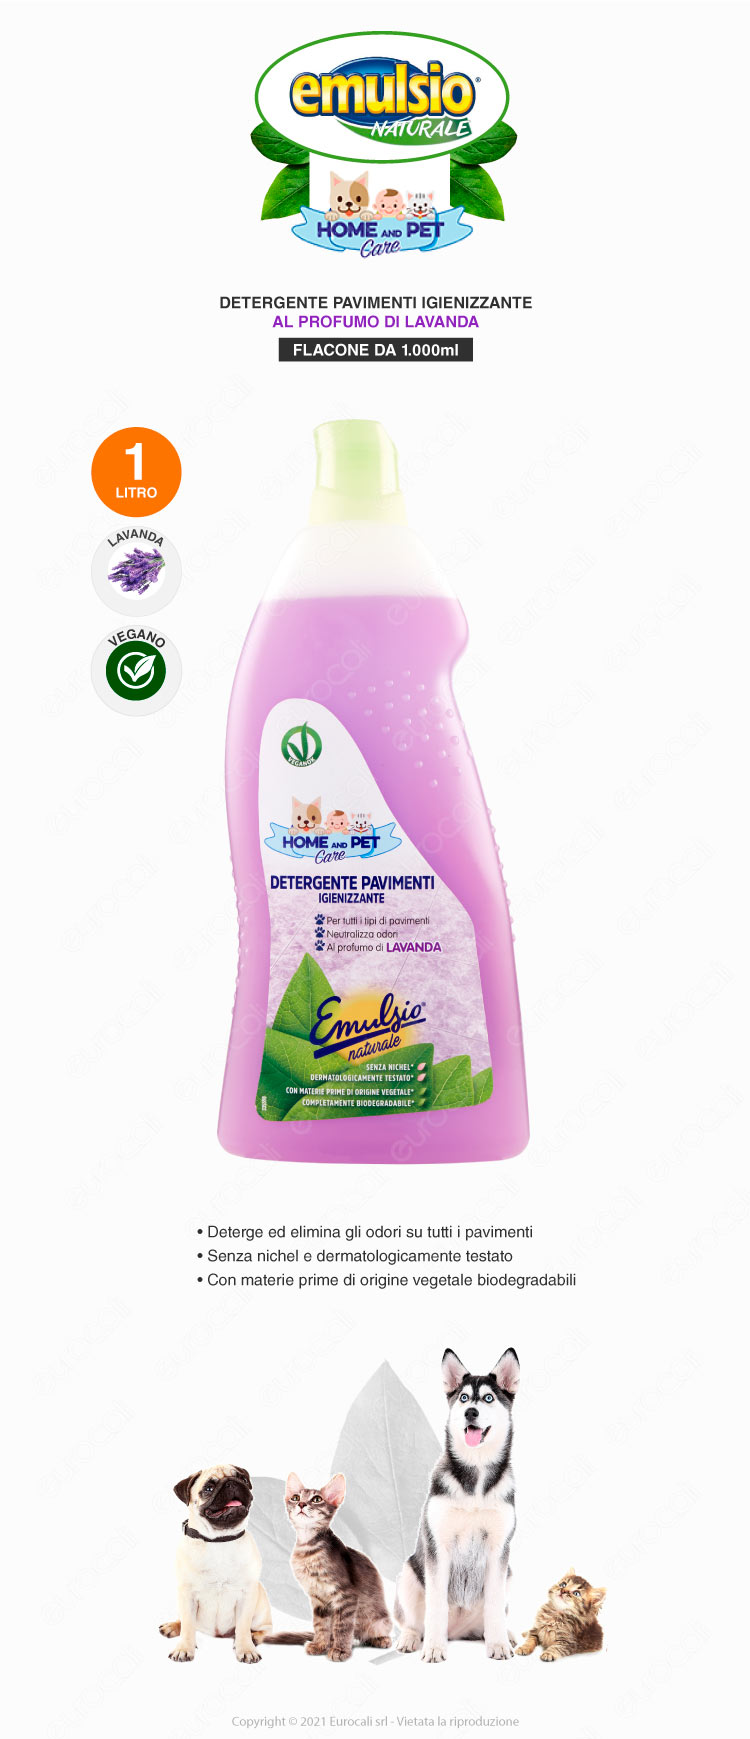 emulsio detergente pavimenti biodegradabile home and pet